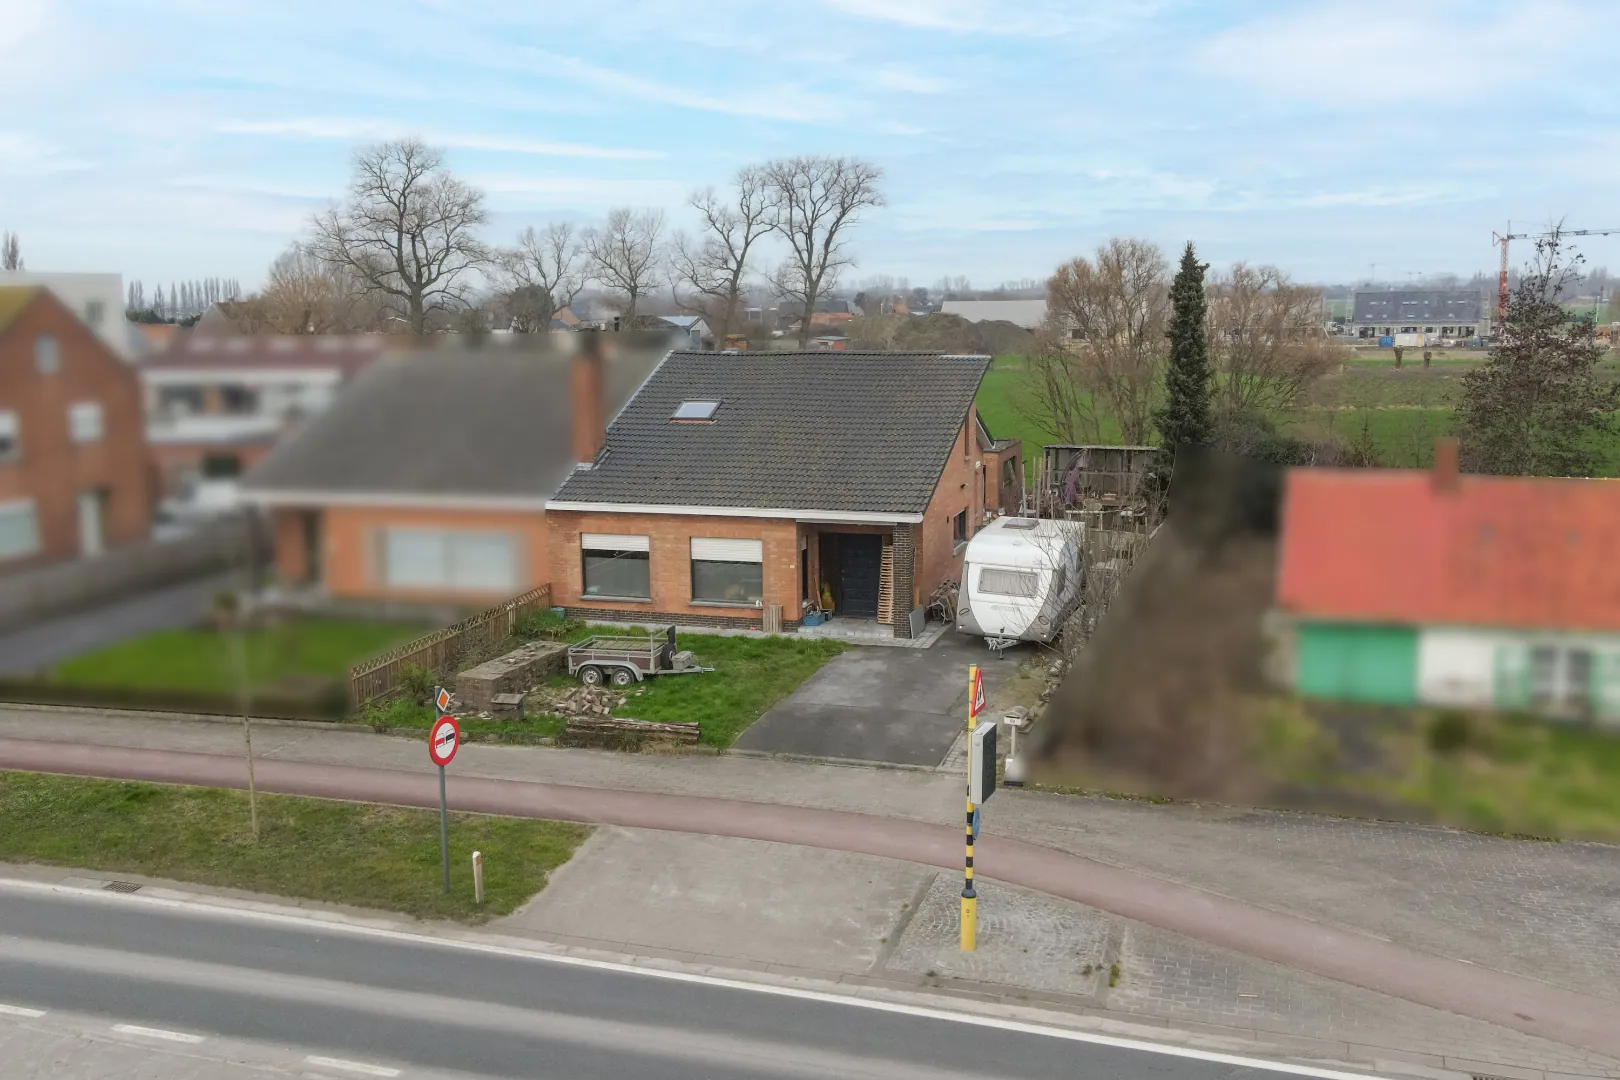 Verkoop bungalow met huurcontract (min 9 jaar, modaliteiten verder te bespreken) te Oudenburg!